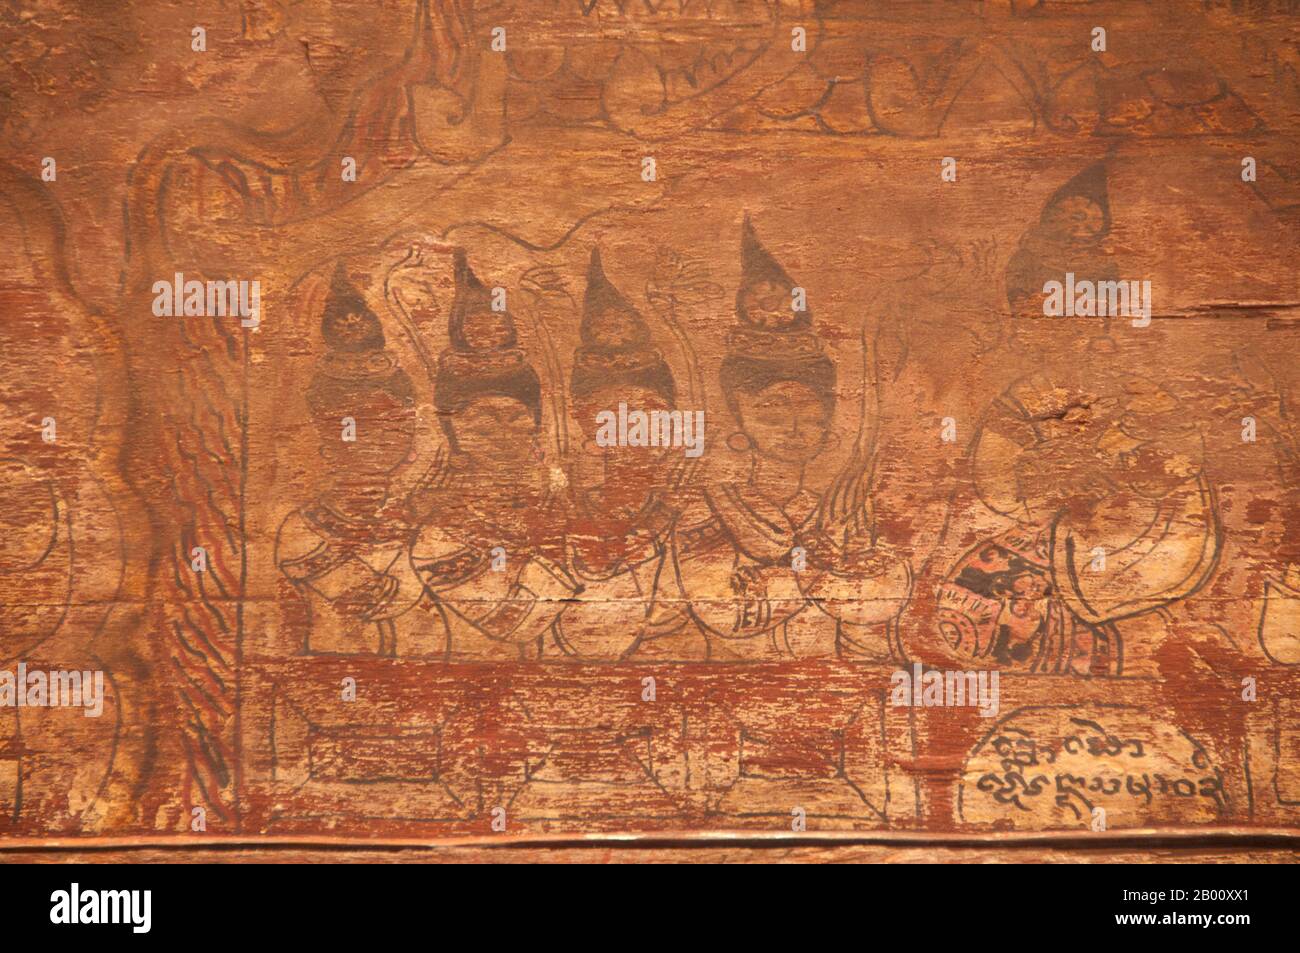 Thailandia: Murale sbiadito raffigurante la vita del 16 ° secolo su un pannello di legno in Viharn Nam taem, Wat Phra che Lampang Luang, Thailandia settentrionale. Viharn Nam taem si ritiene essere il più antico edificio in legno sopravvissuto in Thailandia. Wat Phra che Lampang Luang è stato costruito nel 15 ° secolo ed è un tempio in legno stile Lanna trovato nel distretto di Ko Kha della provincia di Lampang. Foto Stock